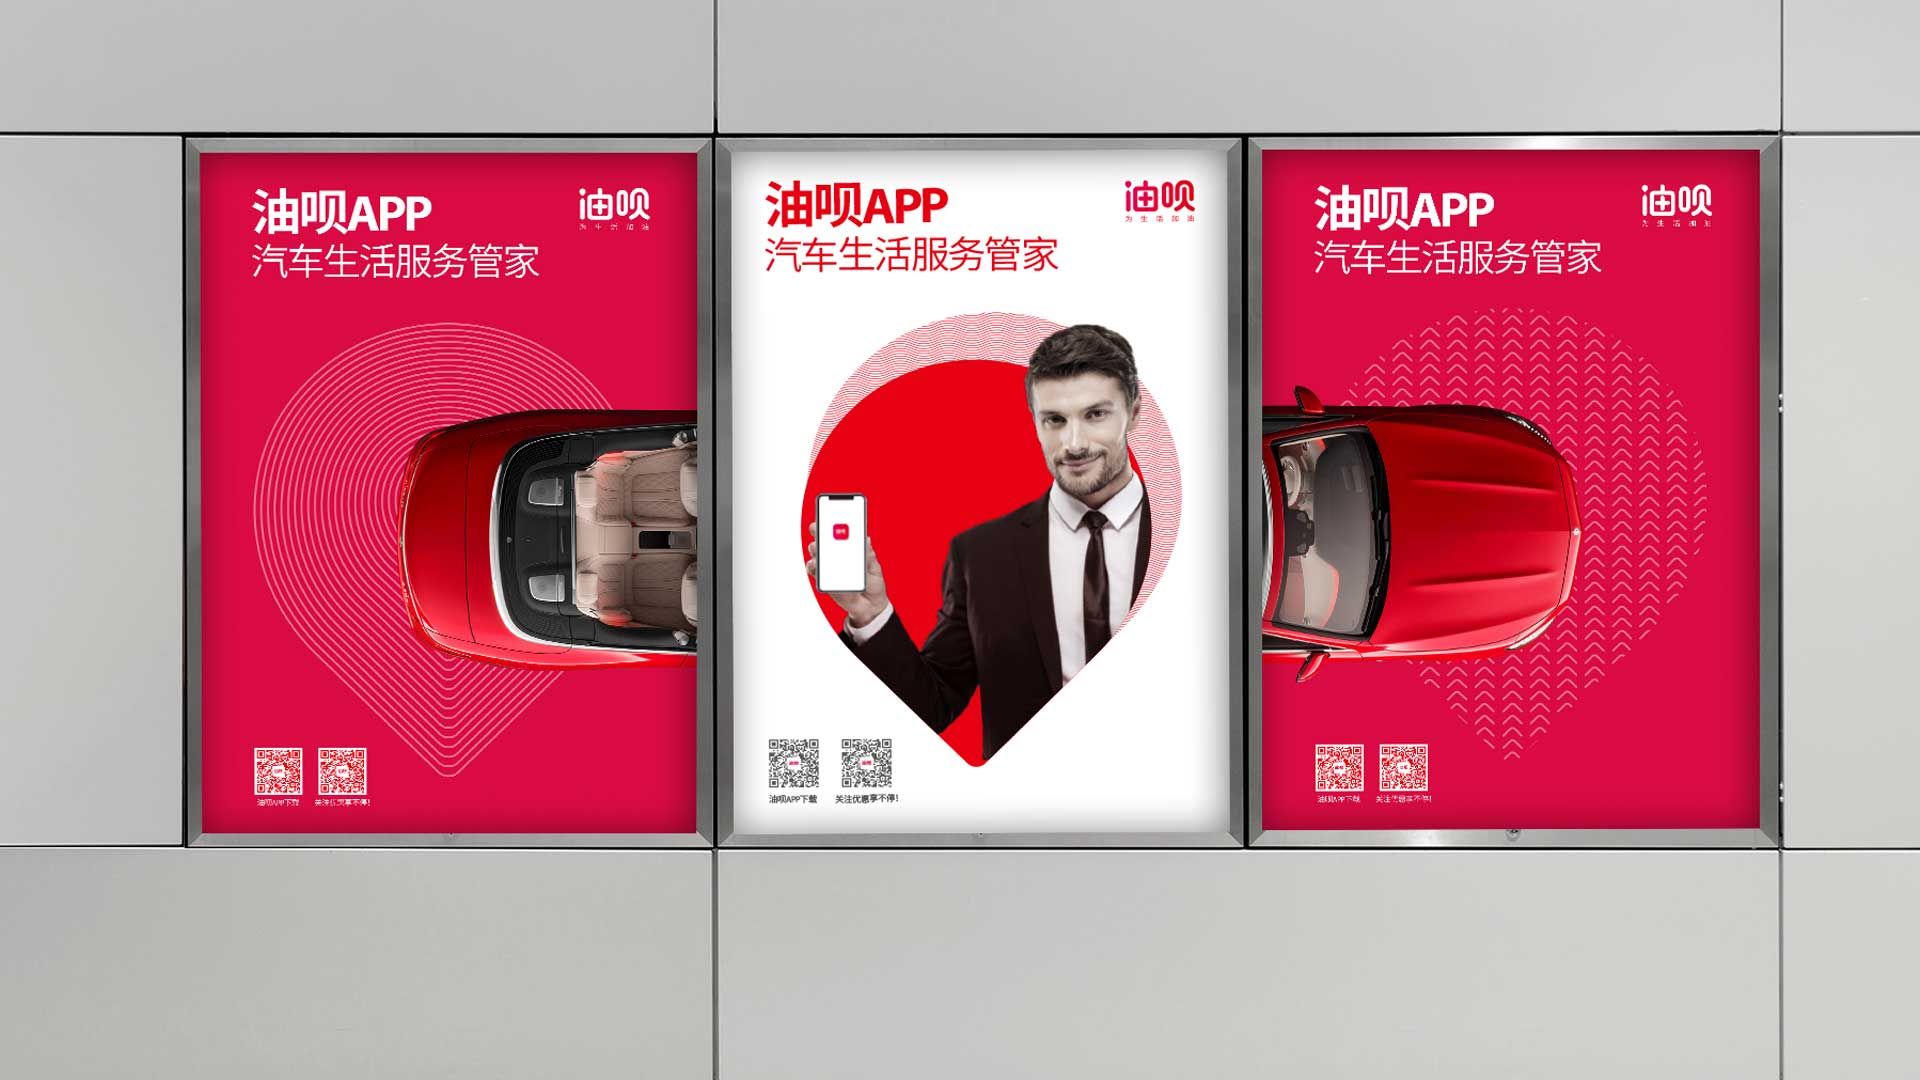 油呗app 汽车生活服务品牌设计 汽车服务品牌  logo设计  app设计 vi设计 互与互创新品牌顾问